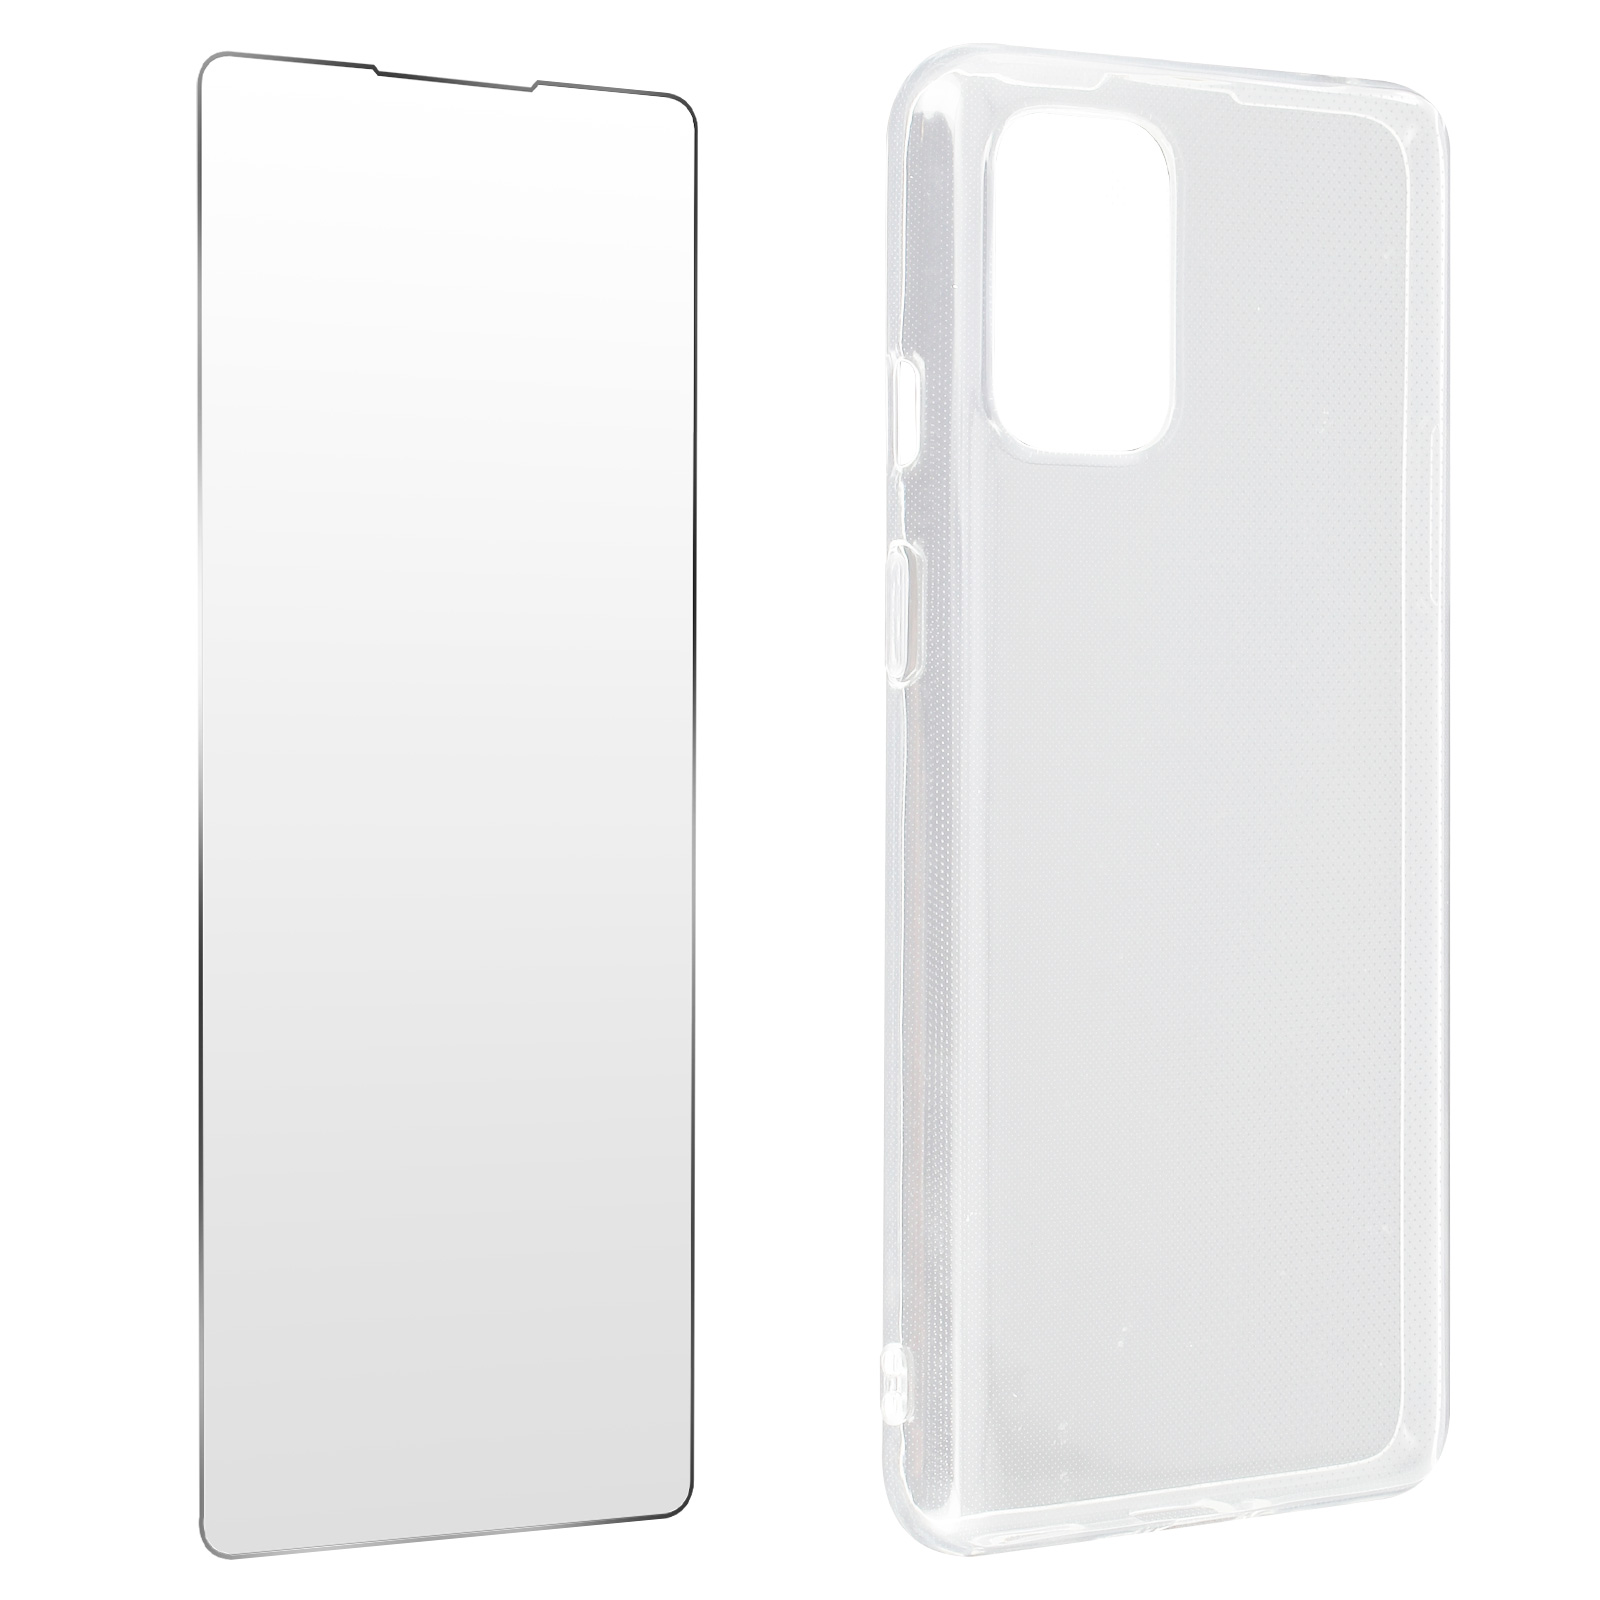 Series, 9, Backcover, AVIZAR Transparent OnePlus Set OnePlus,